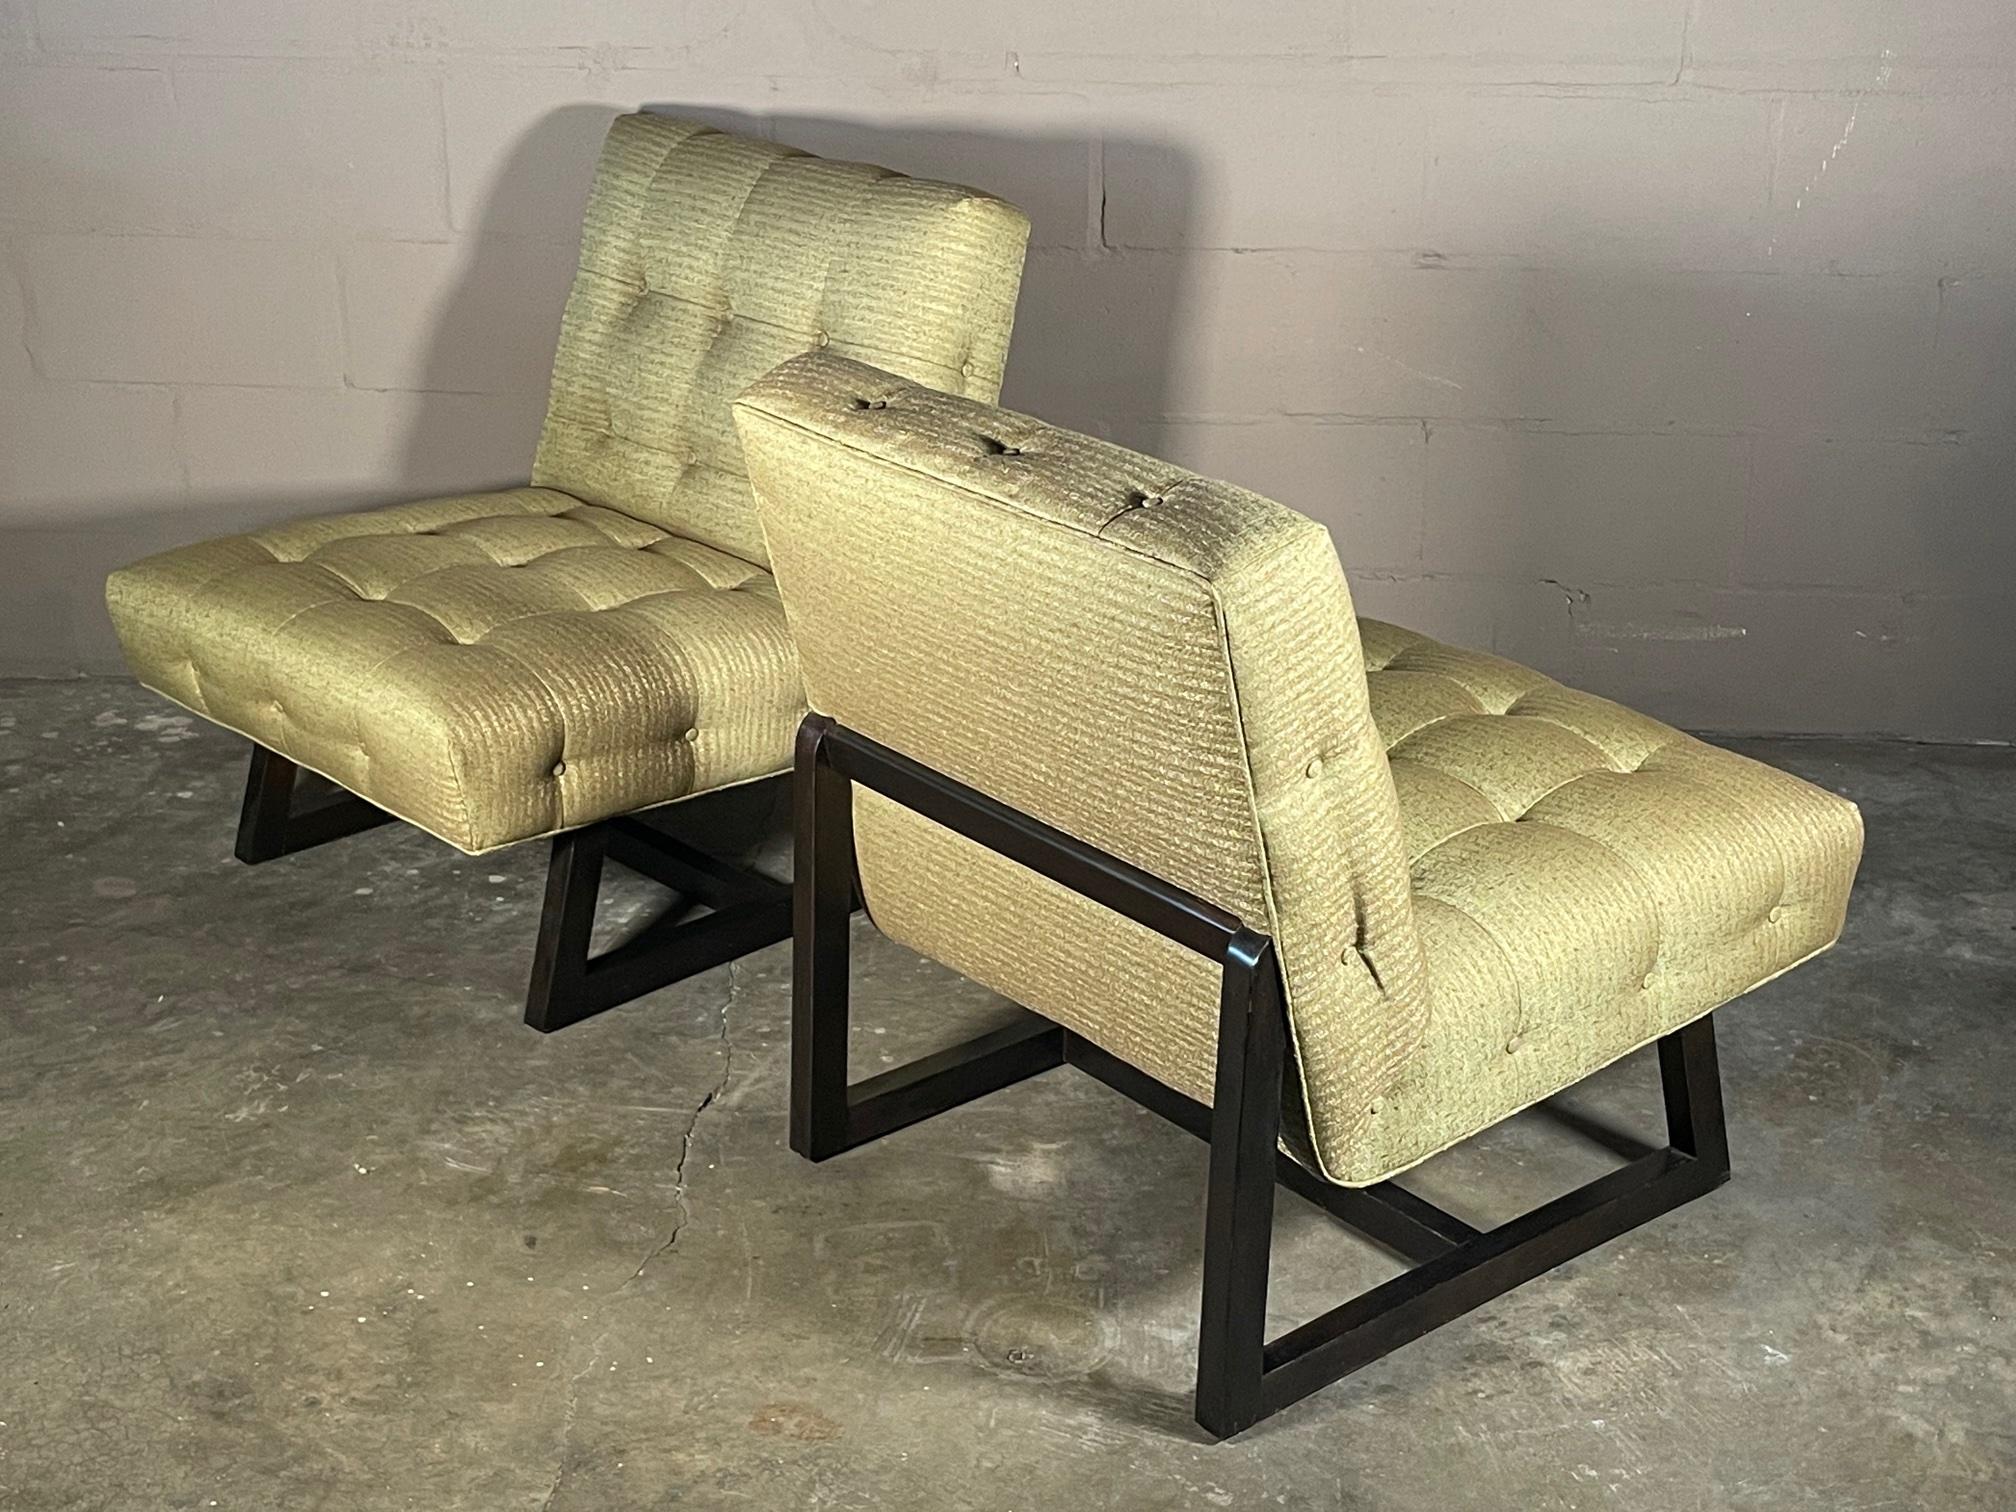 Une superbe paire de fauteuils pantoufles, datant du début des années 1950. Cadre brun foncé, retapissé en tissu vert/brun d'époque.